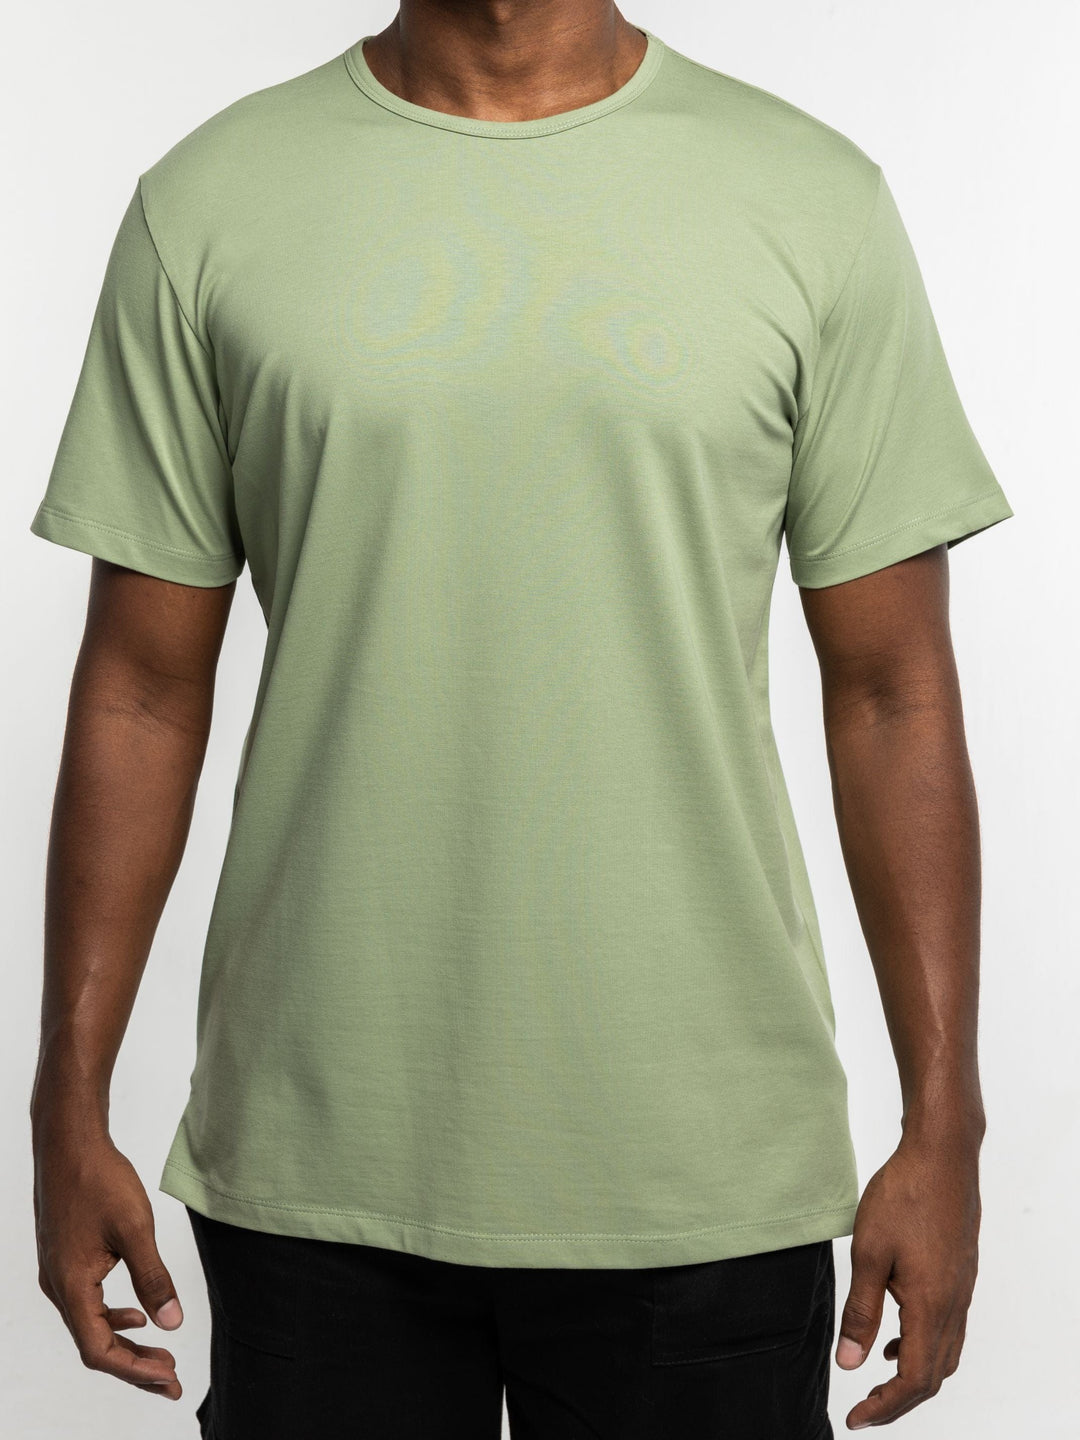 Zhivago x Nuuk Men T-shirt Sage Green Split Hem T-Shirt: SLS Comfort